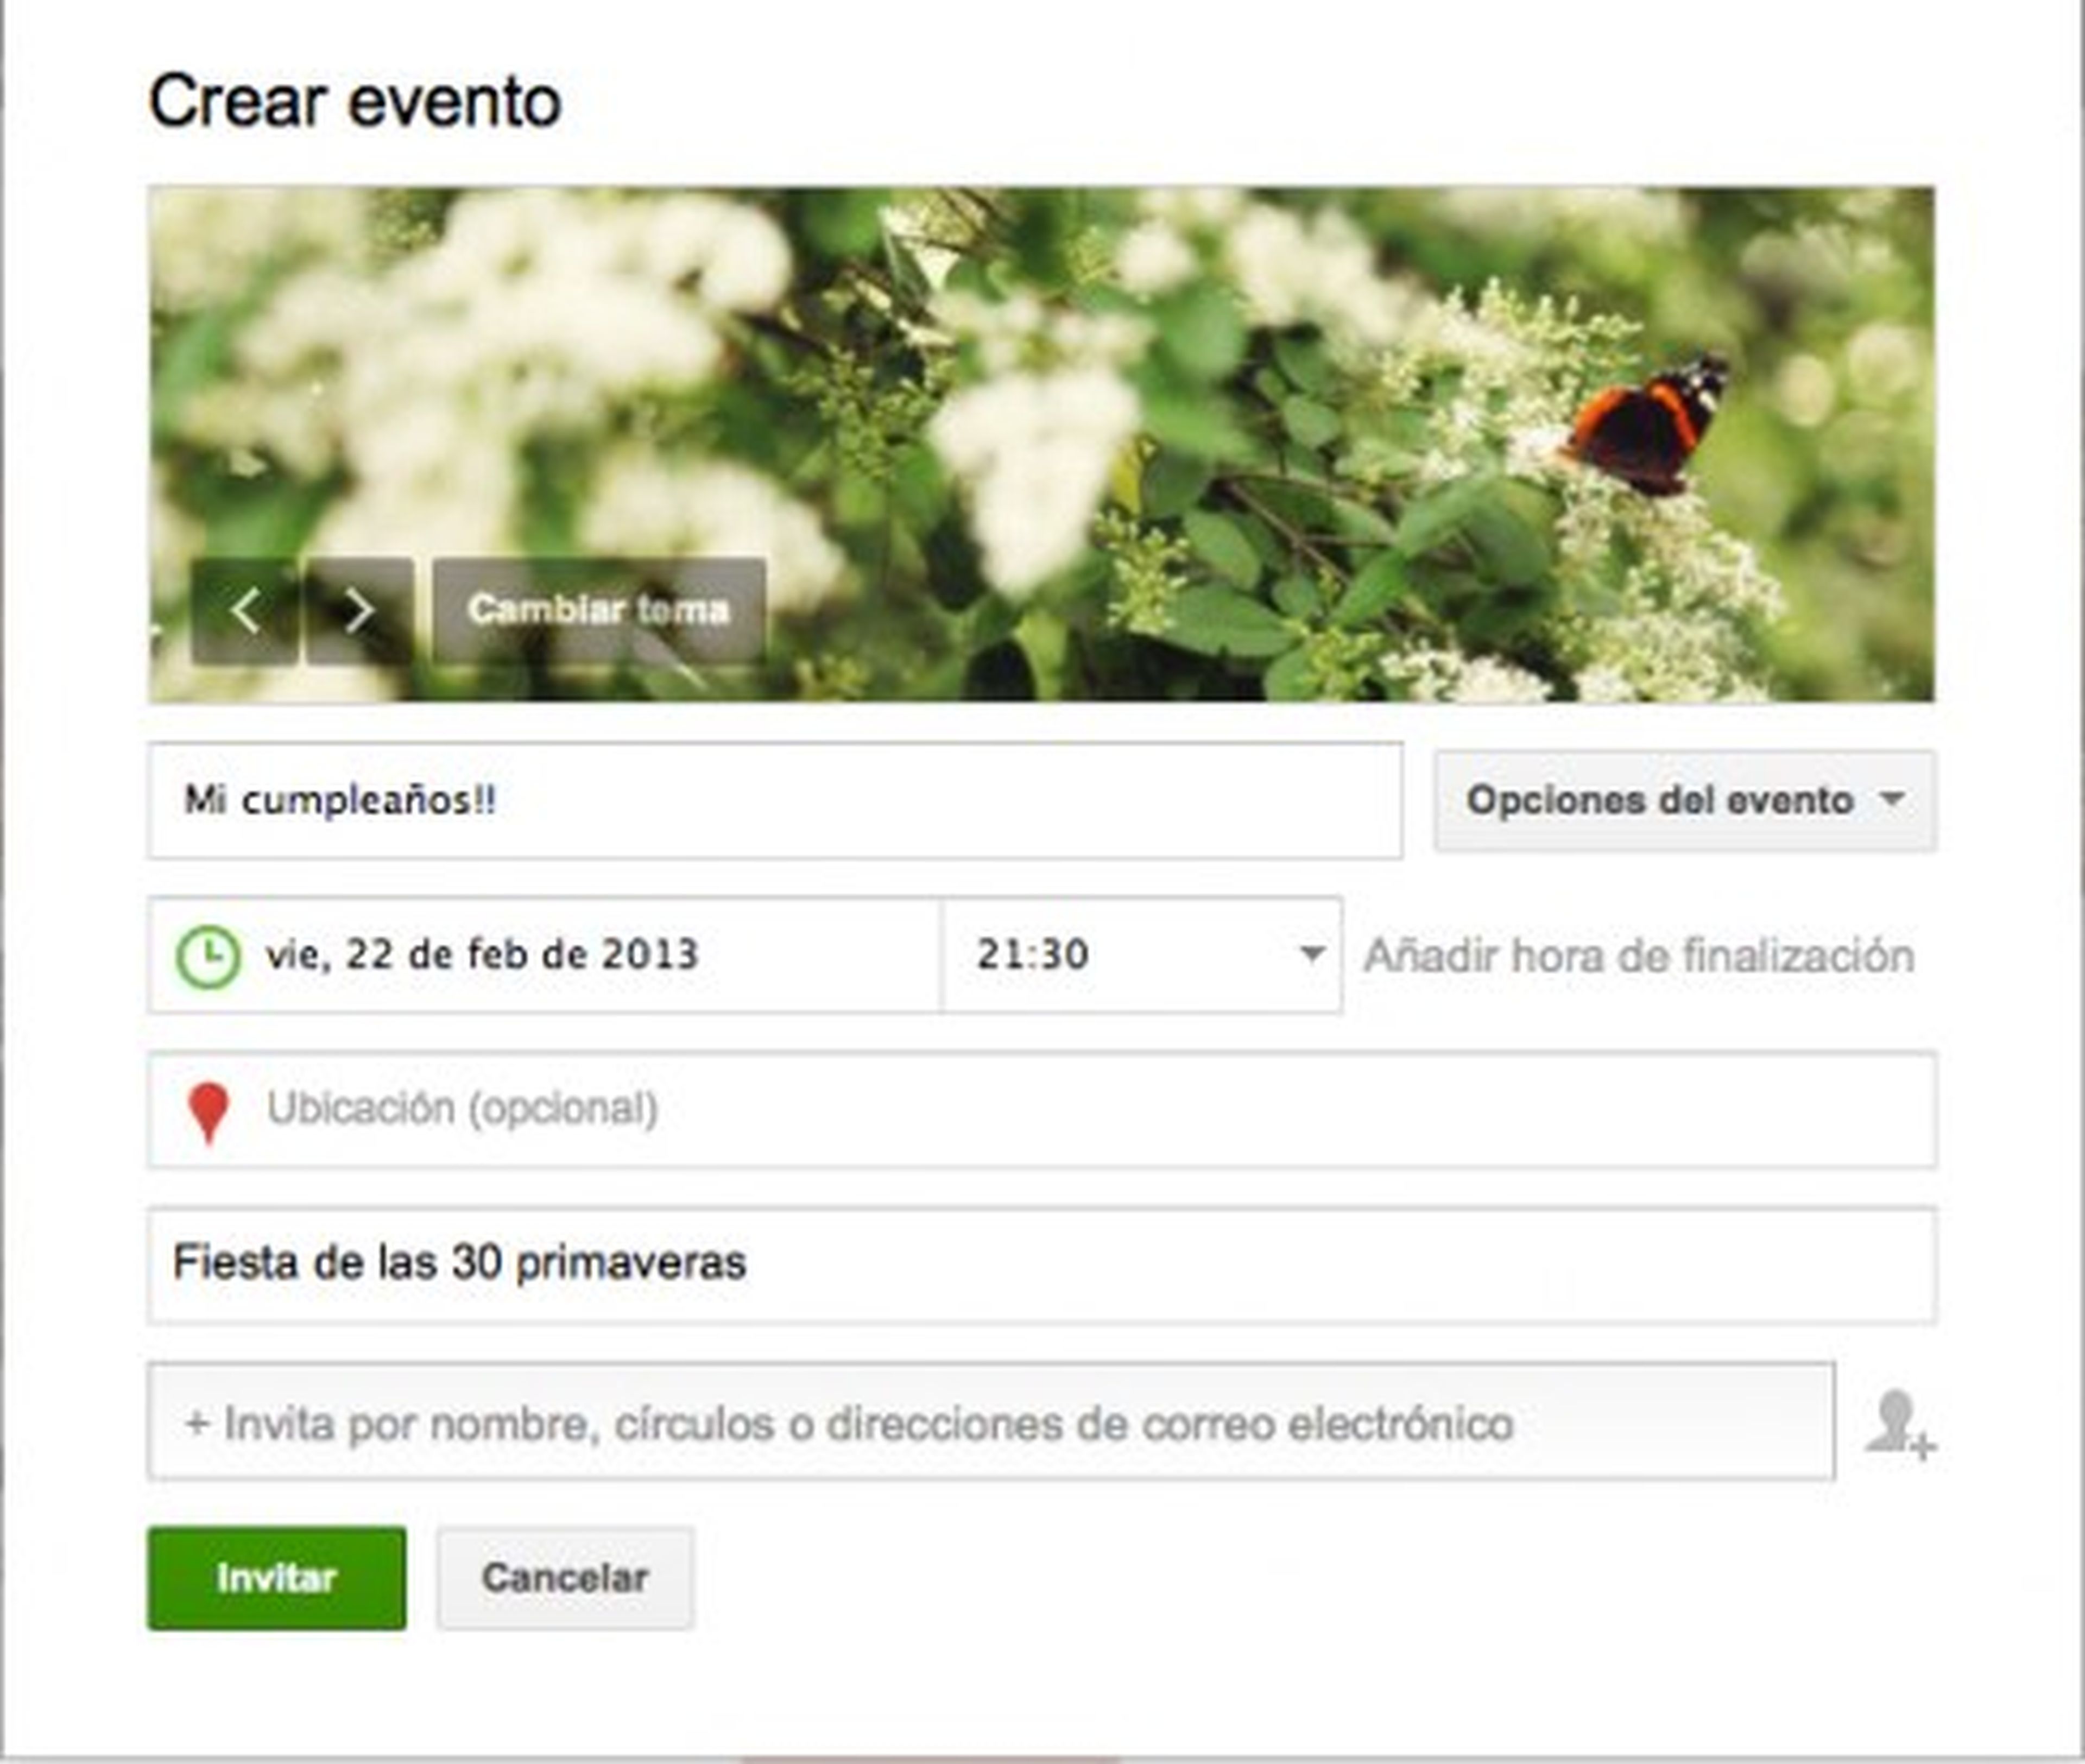 Crea un evento en un local de Google Plus